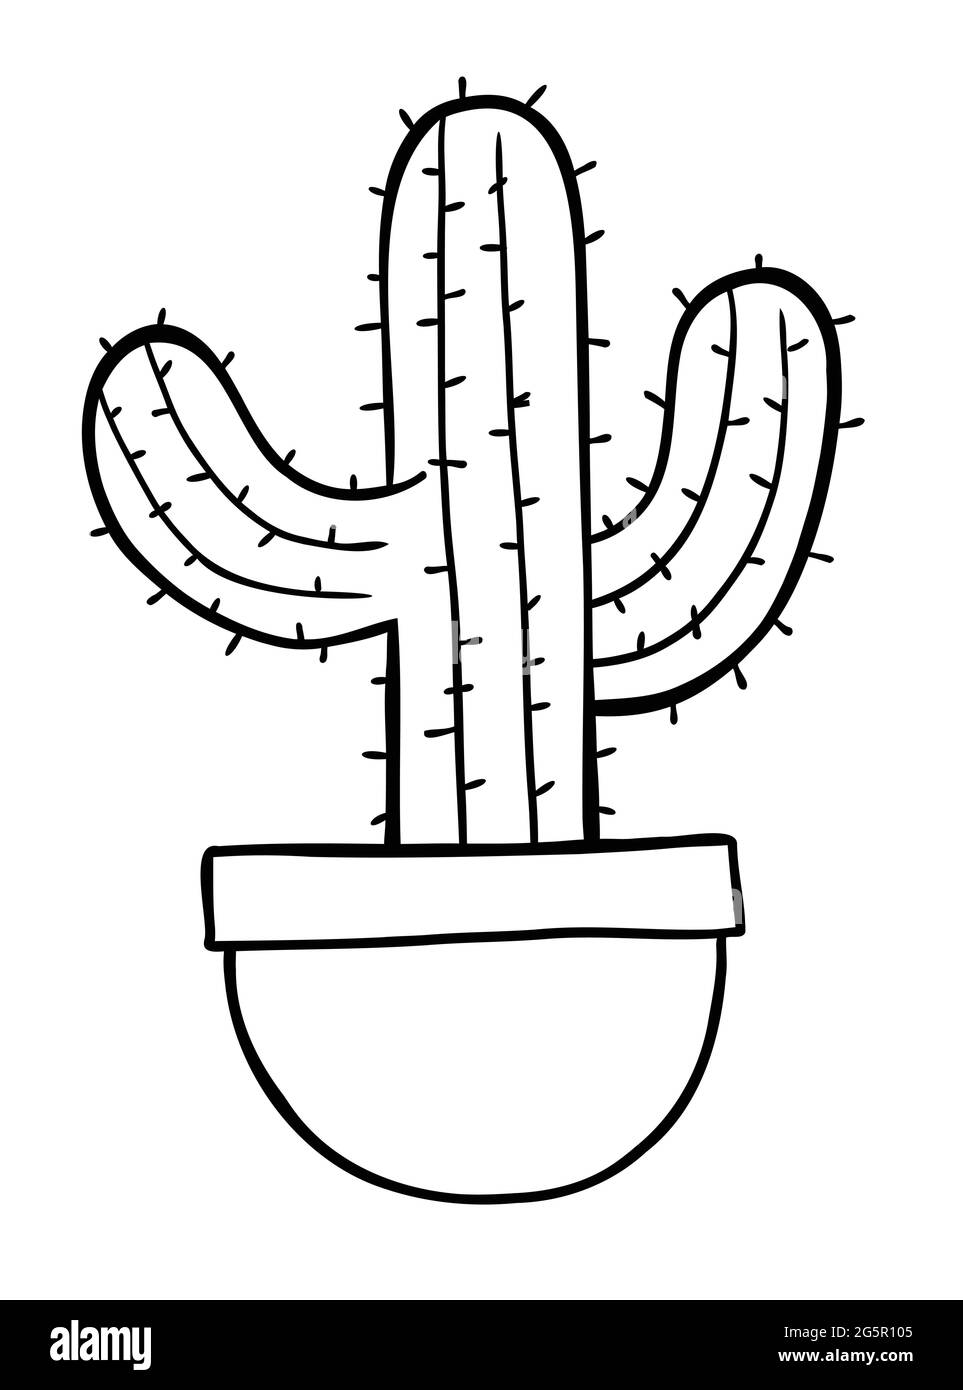 Ilustración de vectores de dibujos animados de cactus en maceta. Contorno  negro y color blanco Imagen Vector de stock - Alamy